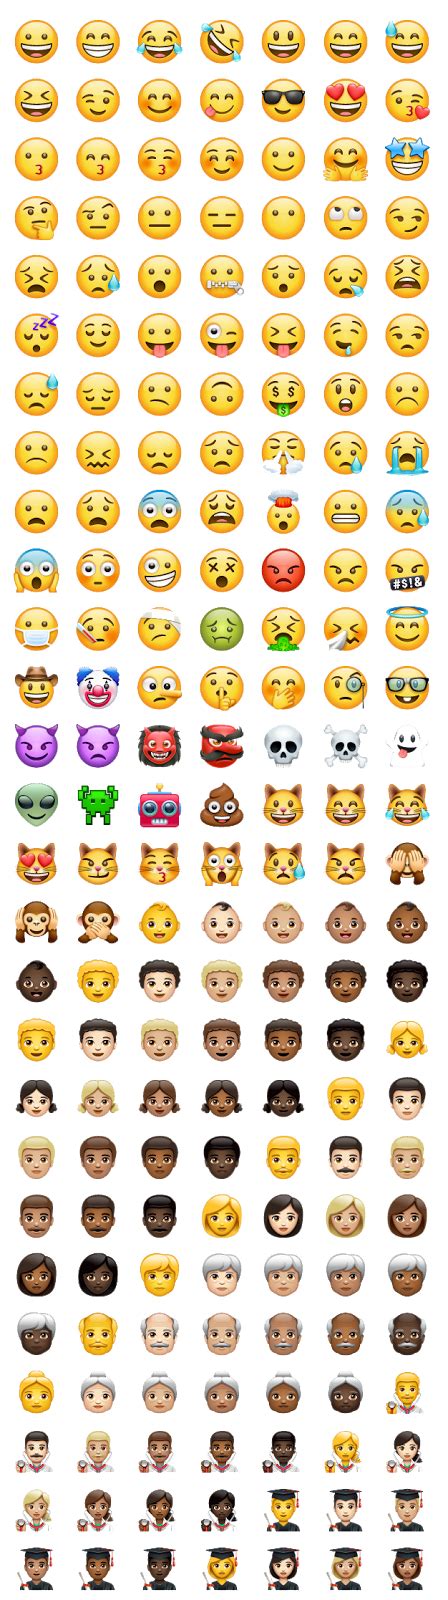 Significado De Emojis De Carinhas Muito Populares Na Internet Eles Podem Ser Utilizados Para